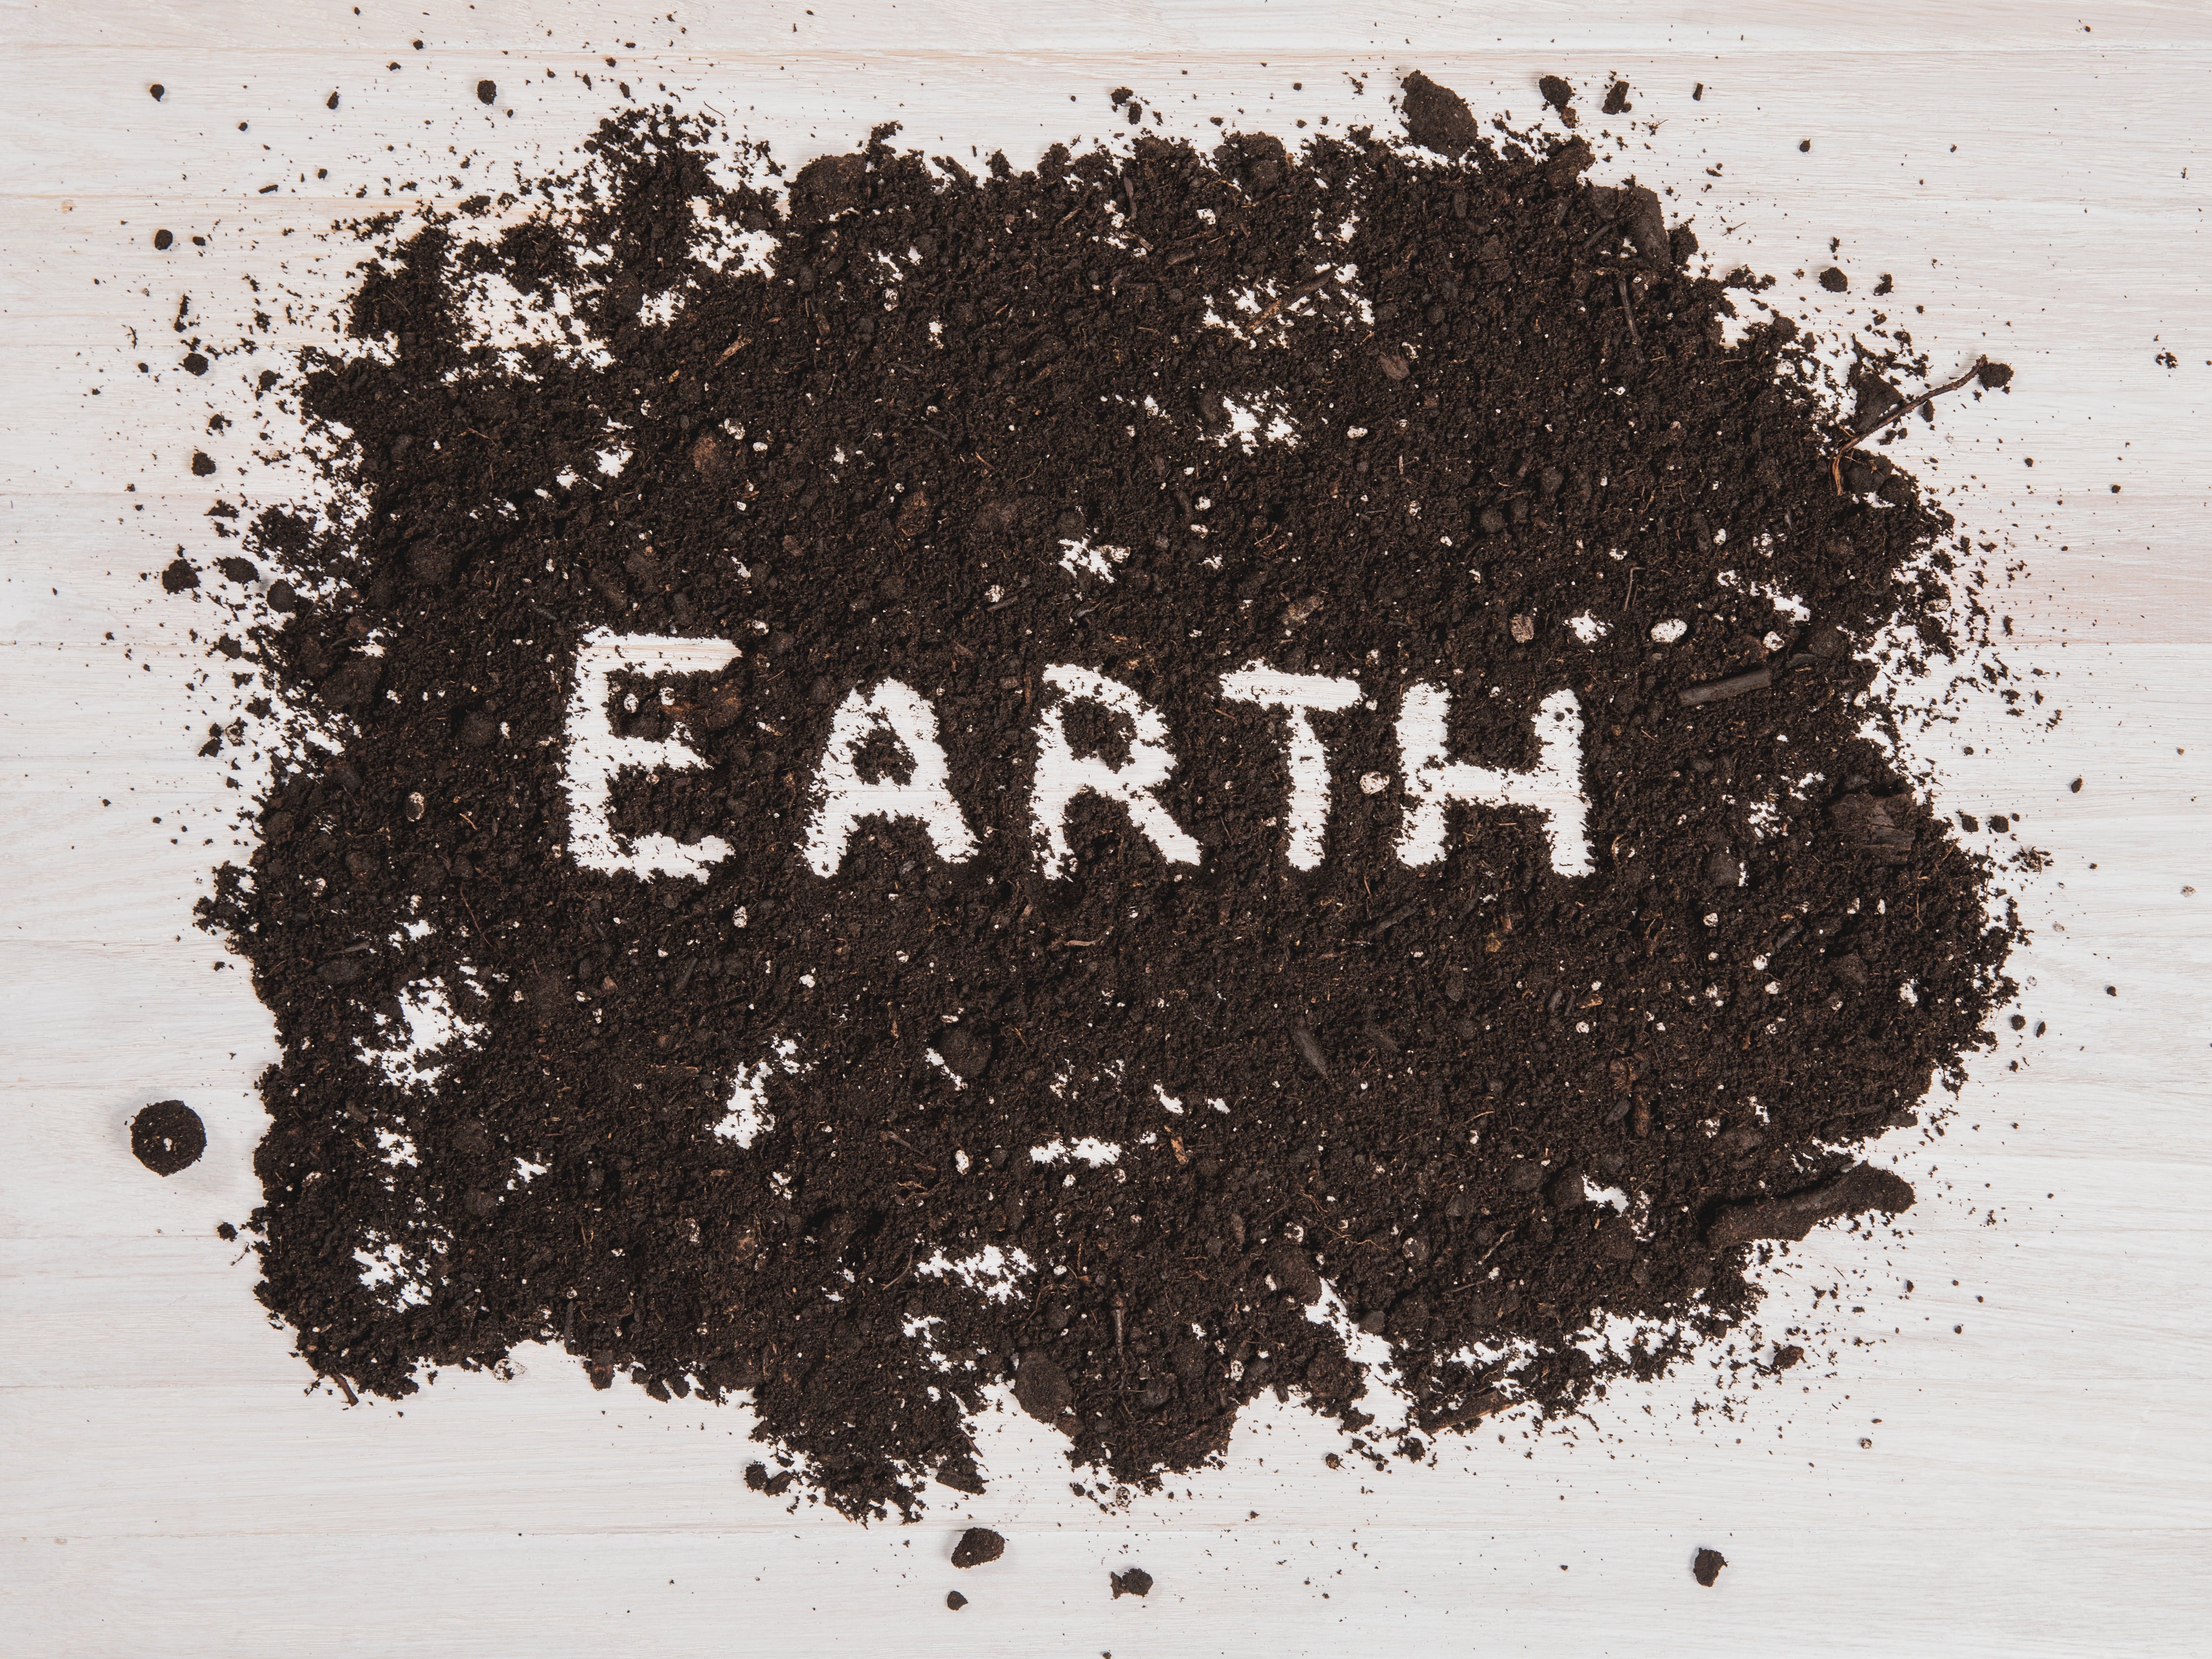 earth-written-in-dirt.jpg